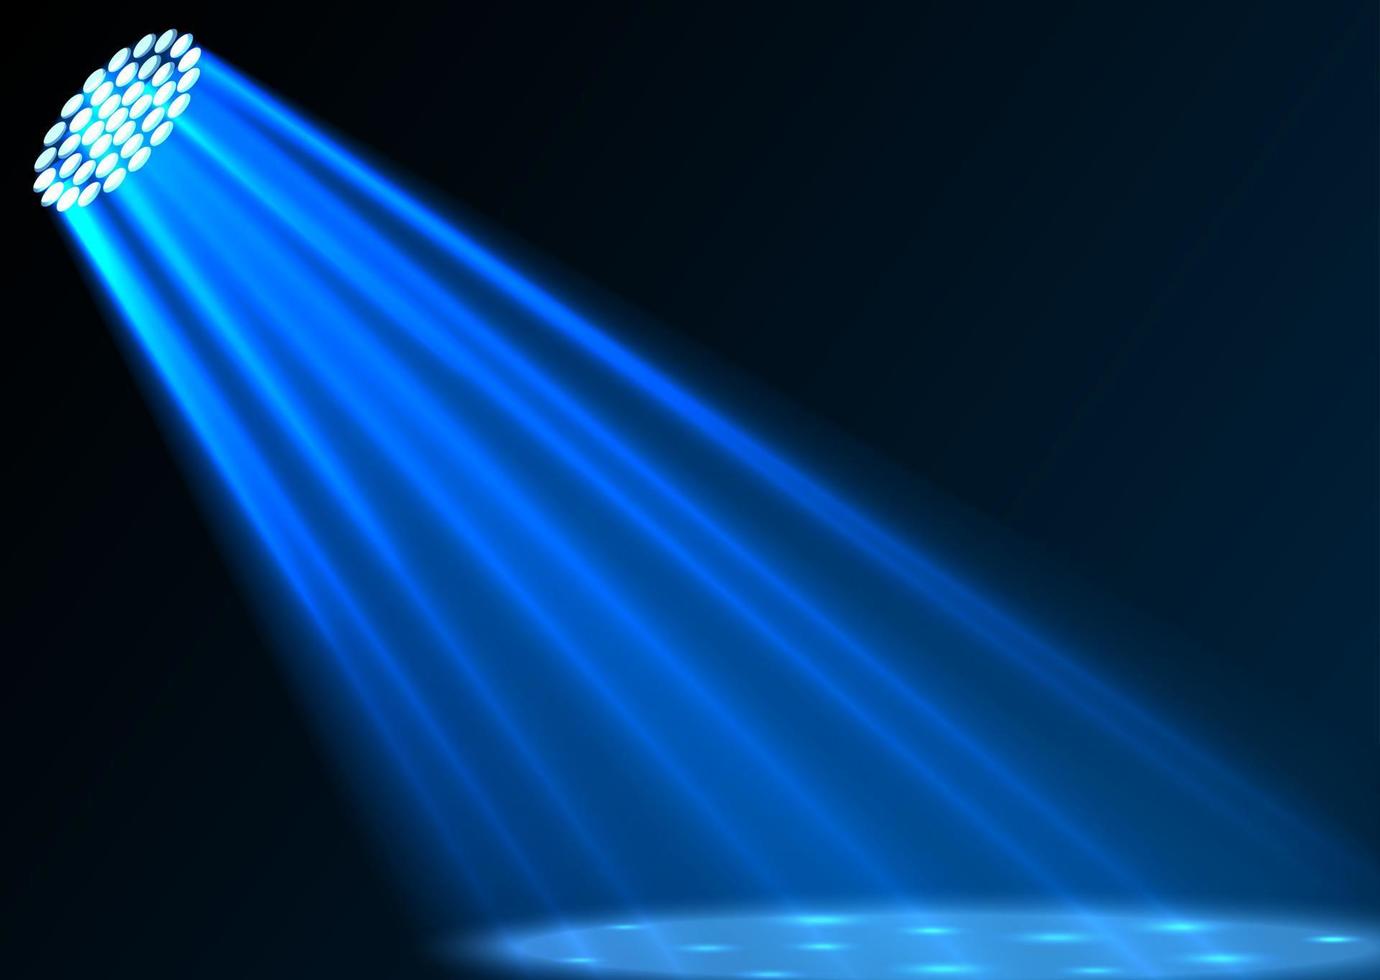 Blue spotlights on dark background vector